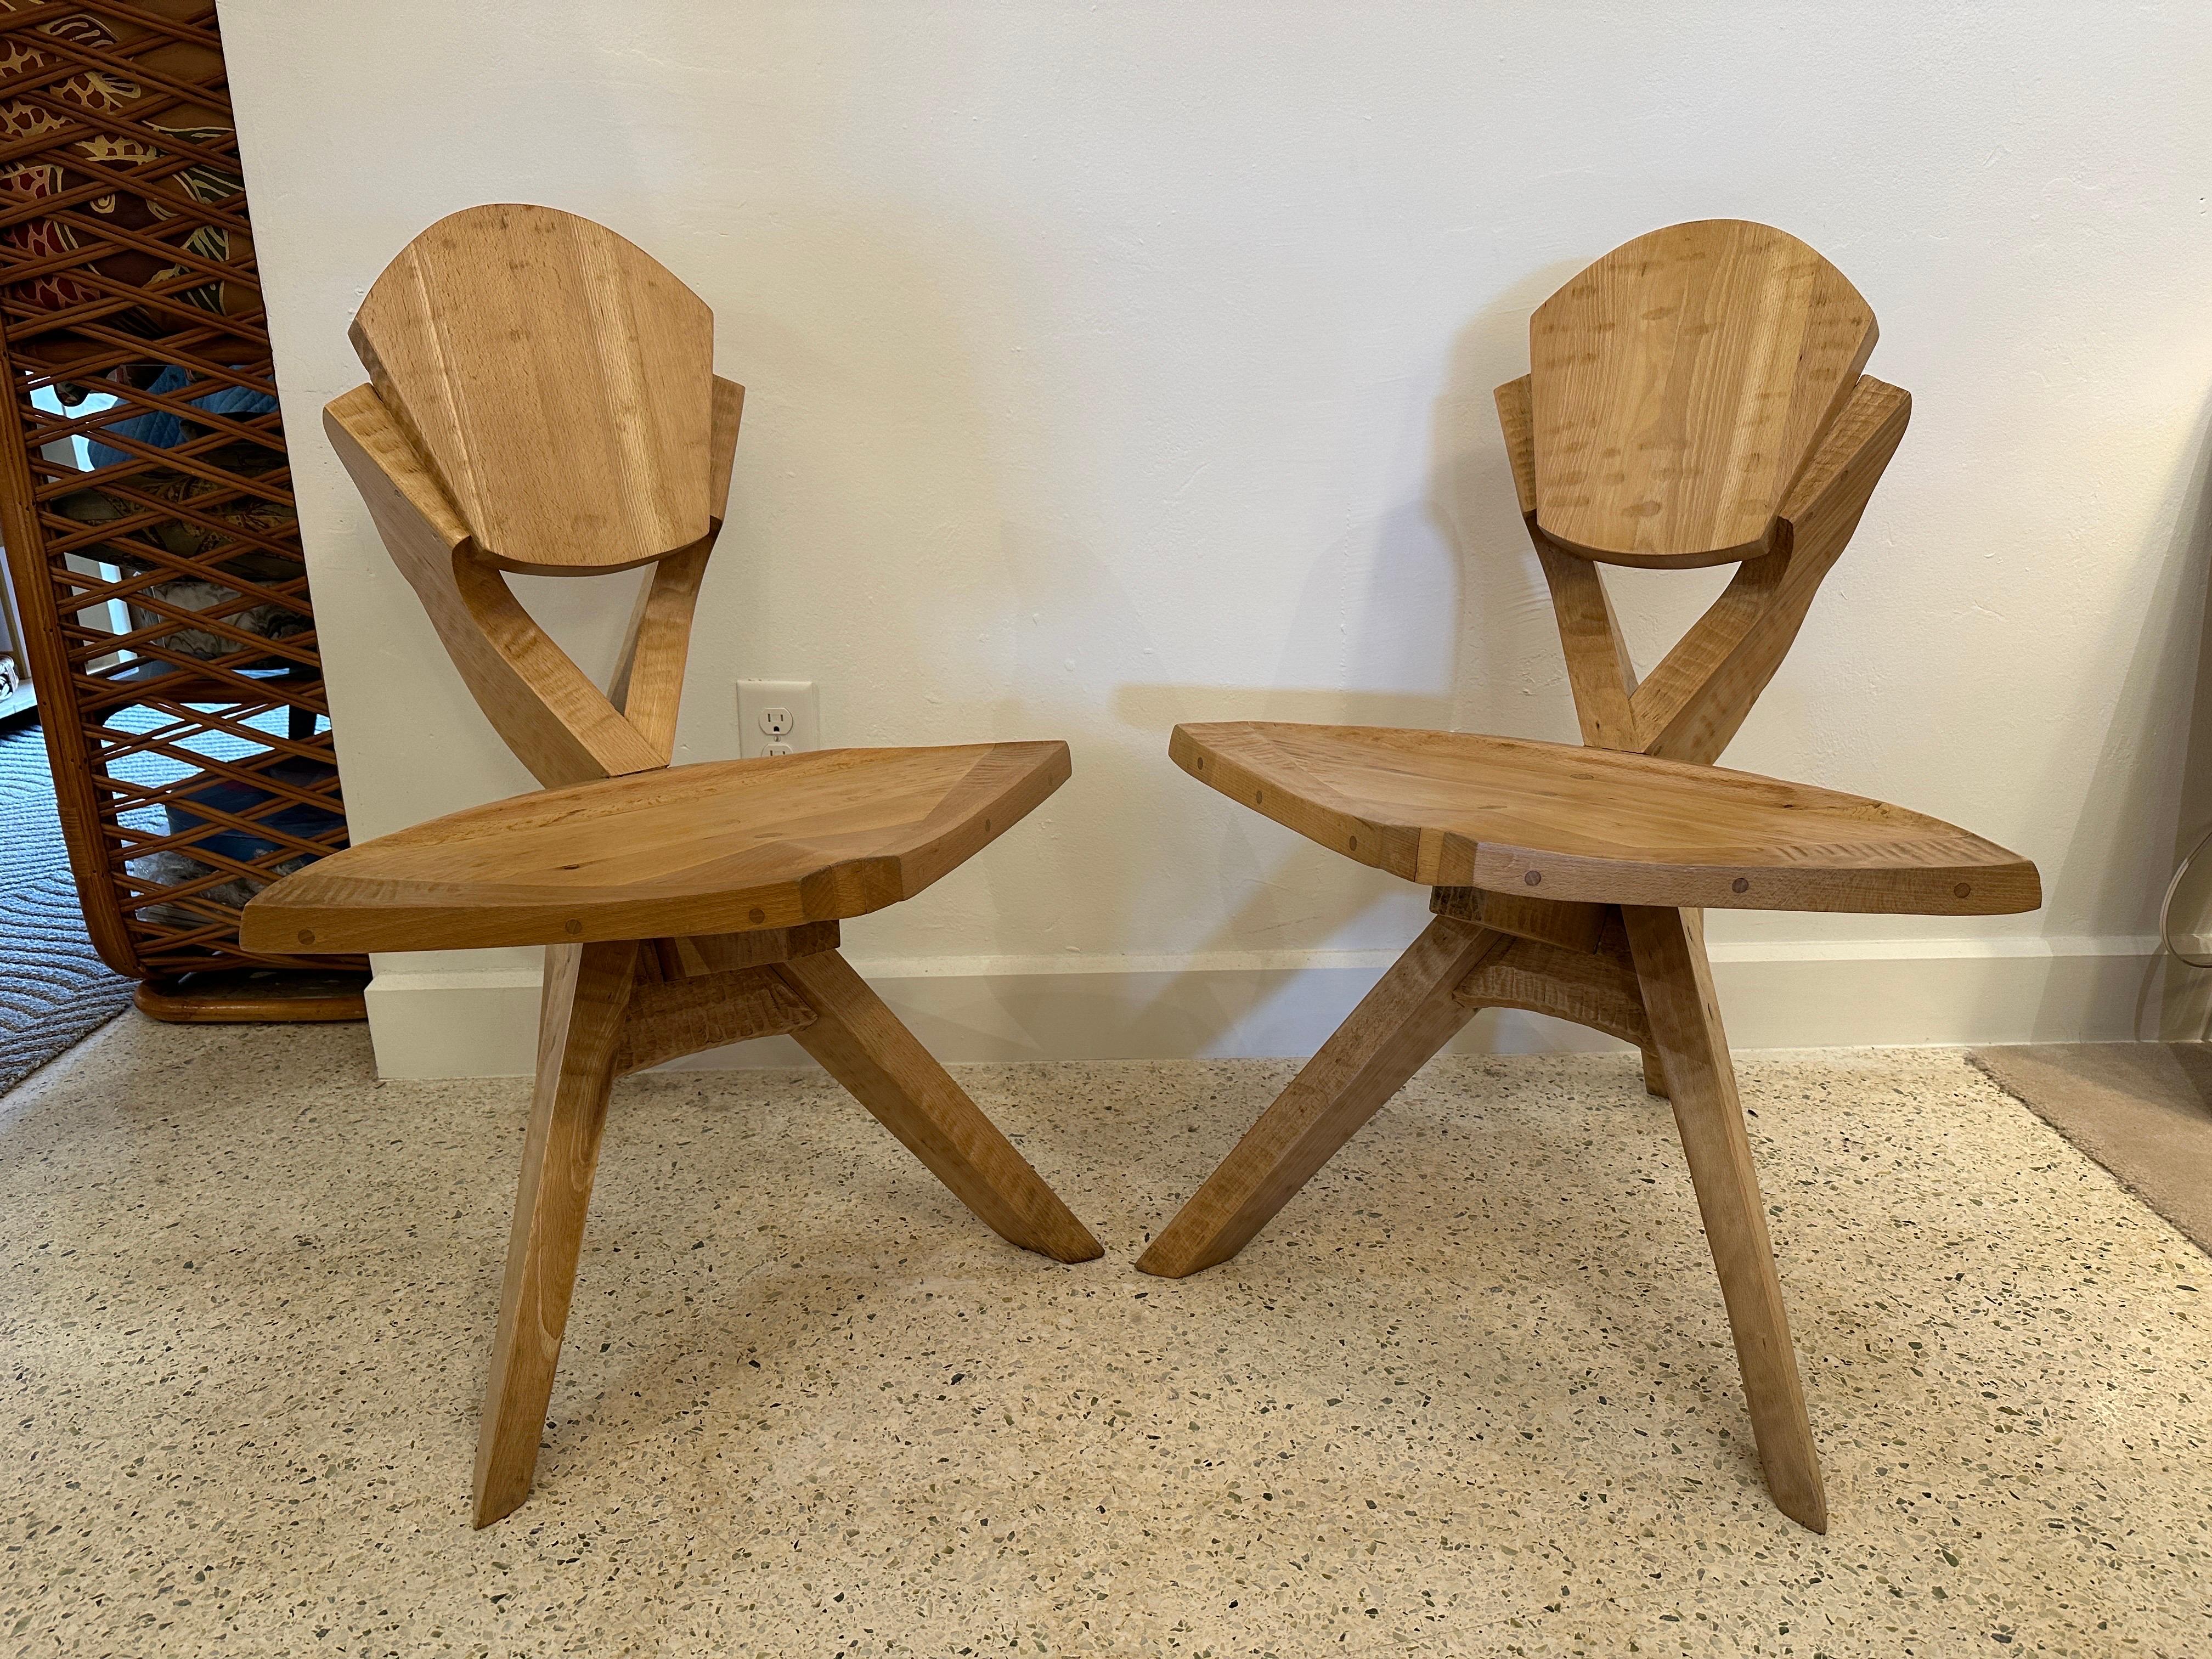 Dieses Paar handgefertigter skulpturaler Holzstühle verfügt über 3 Beine und außergewöhnliche Details an Rückenlehne und Sitzfläche - SIEHE Detailbilder und Video. Architektonisch wunderbar!  DIESER ARTIKEL BEFINDET SICH IN UNSEREM AUSSTELLUNGSRAUM